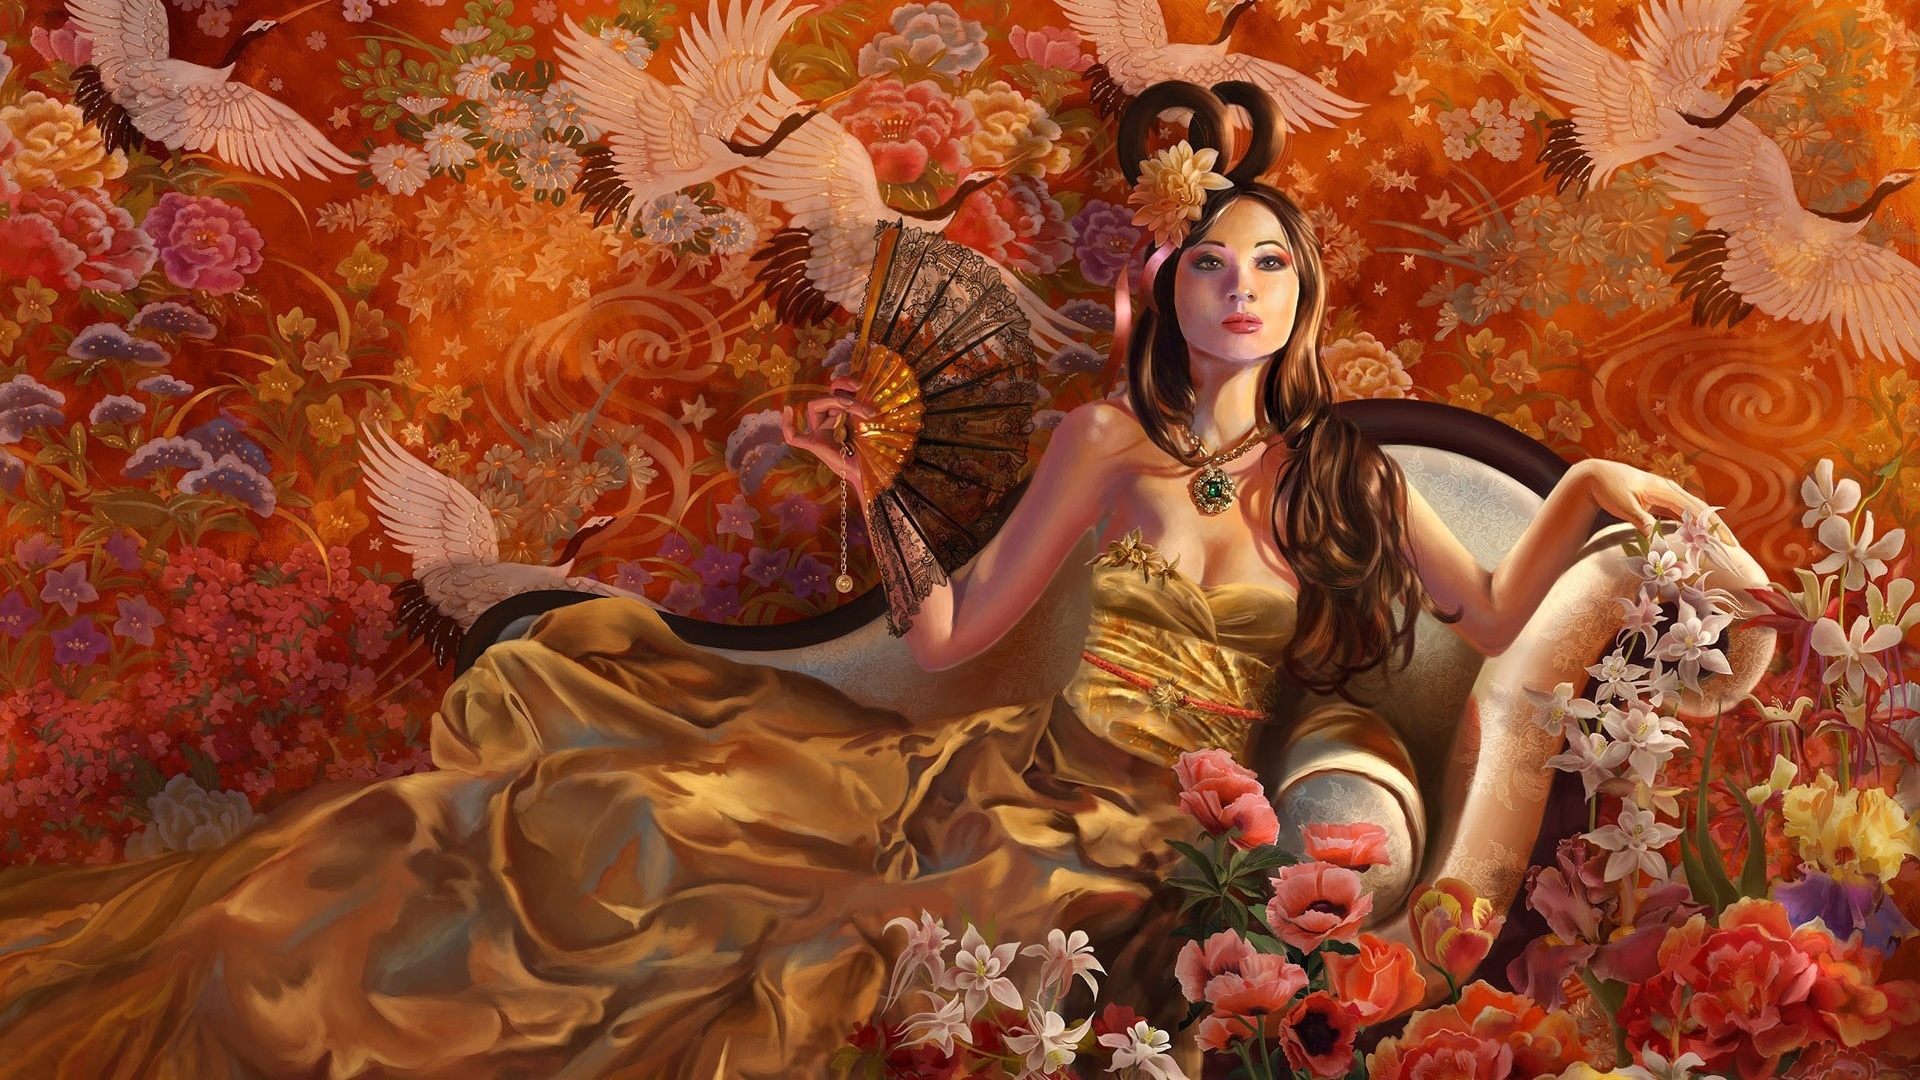 Fantasy Girl Autumn for 1920 x 1080 HDTV 1080p resolution